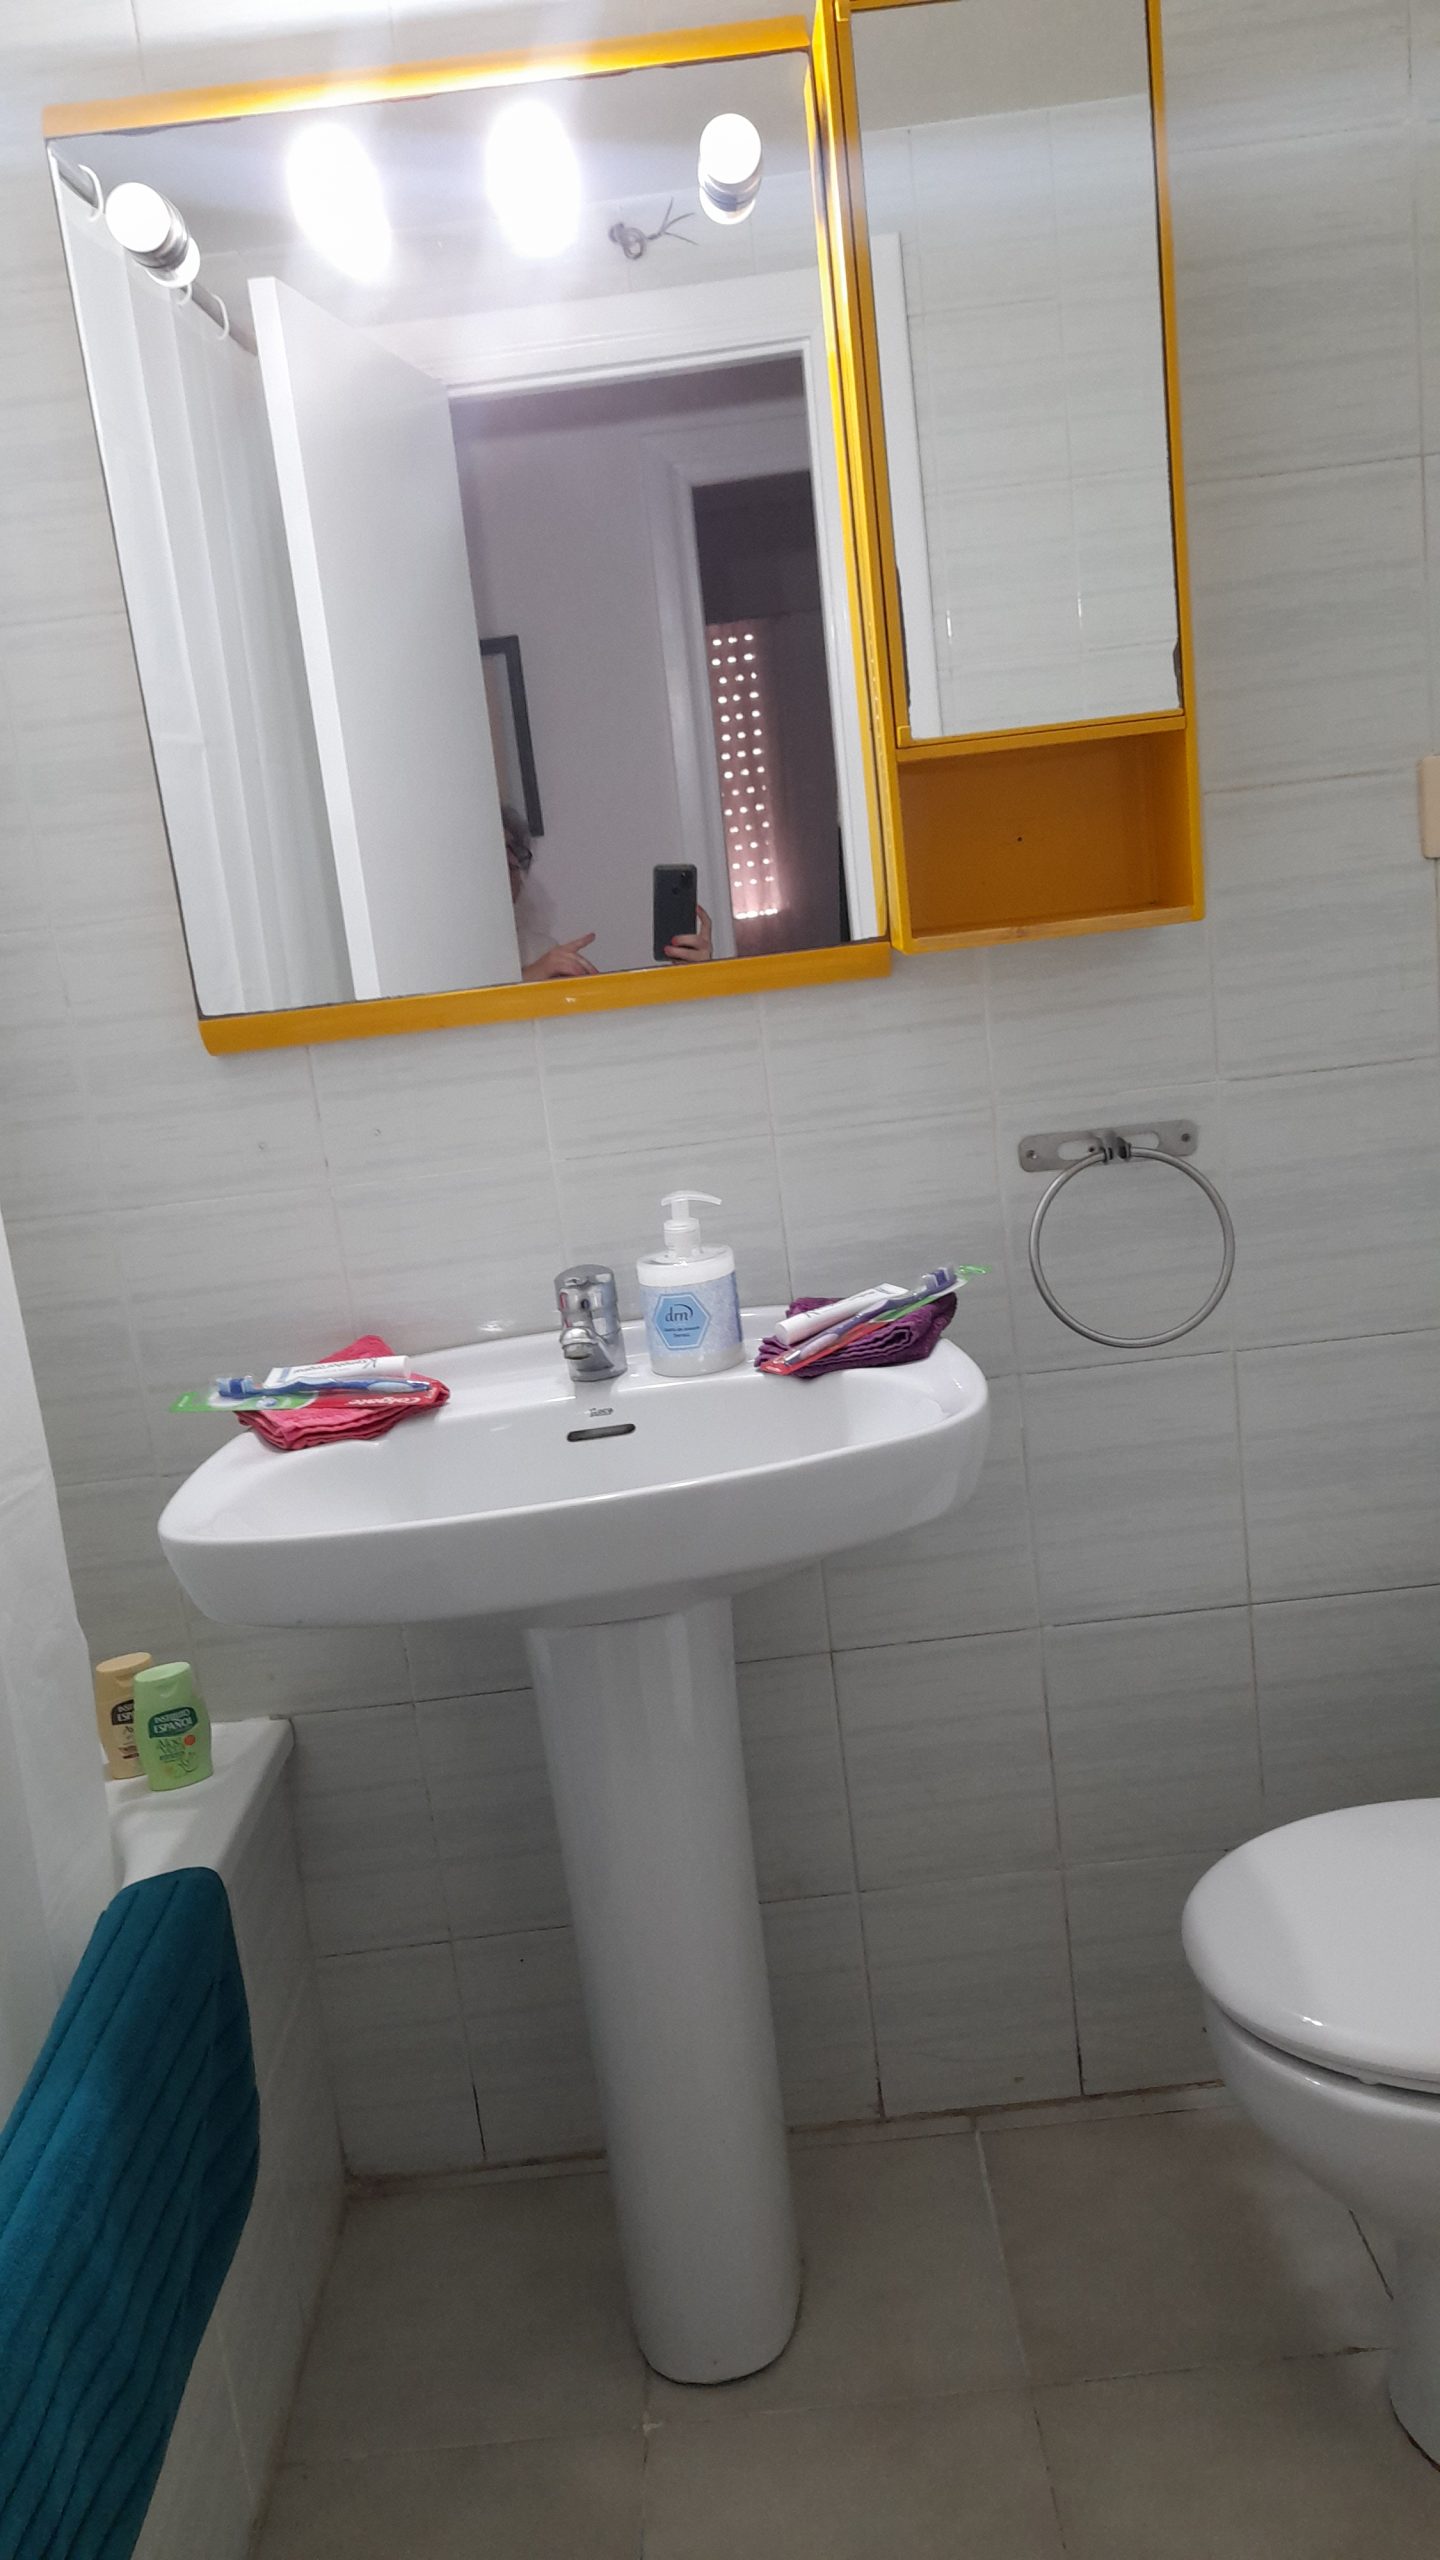 apartment for rent in Castellon- bathroom